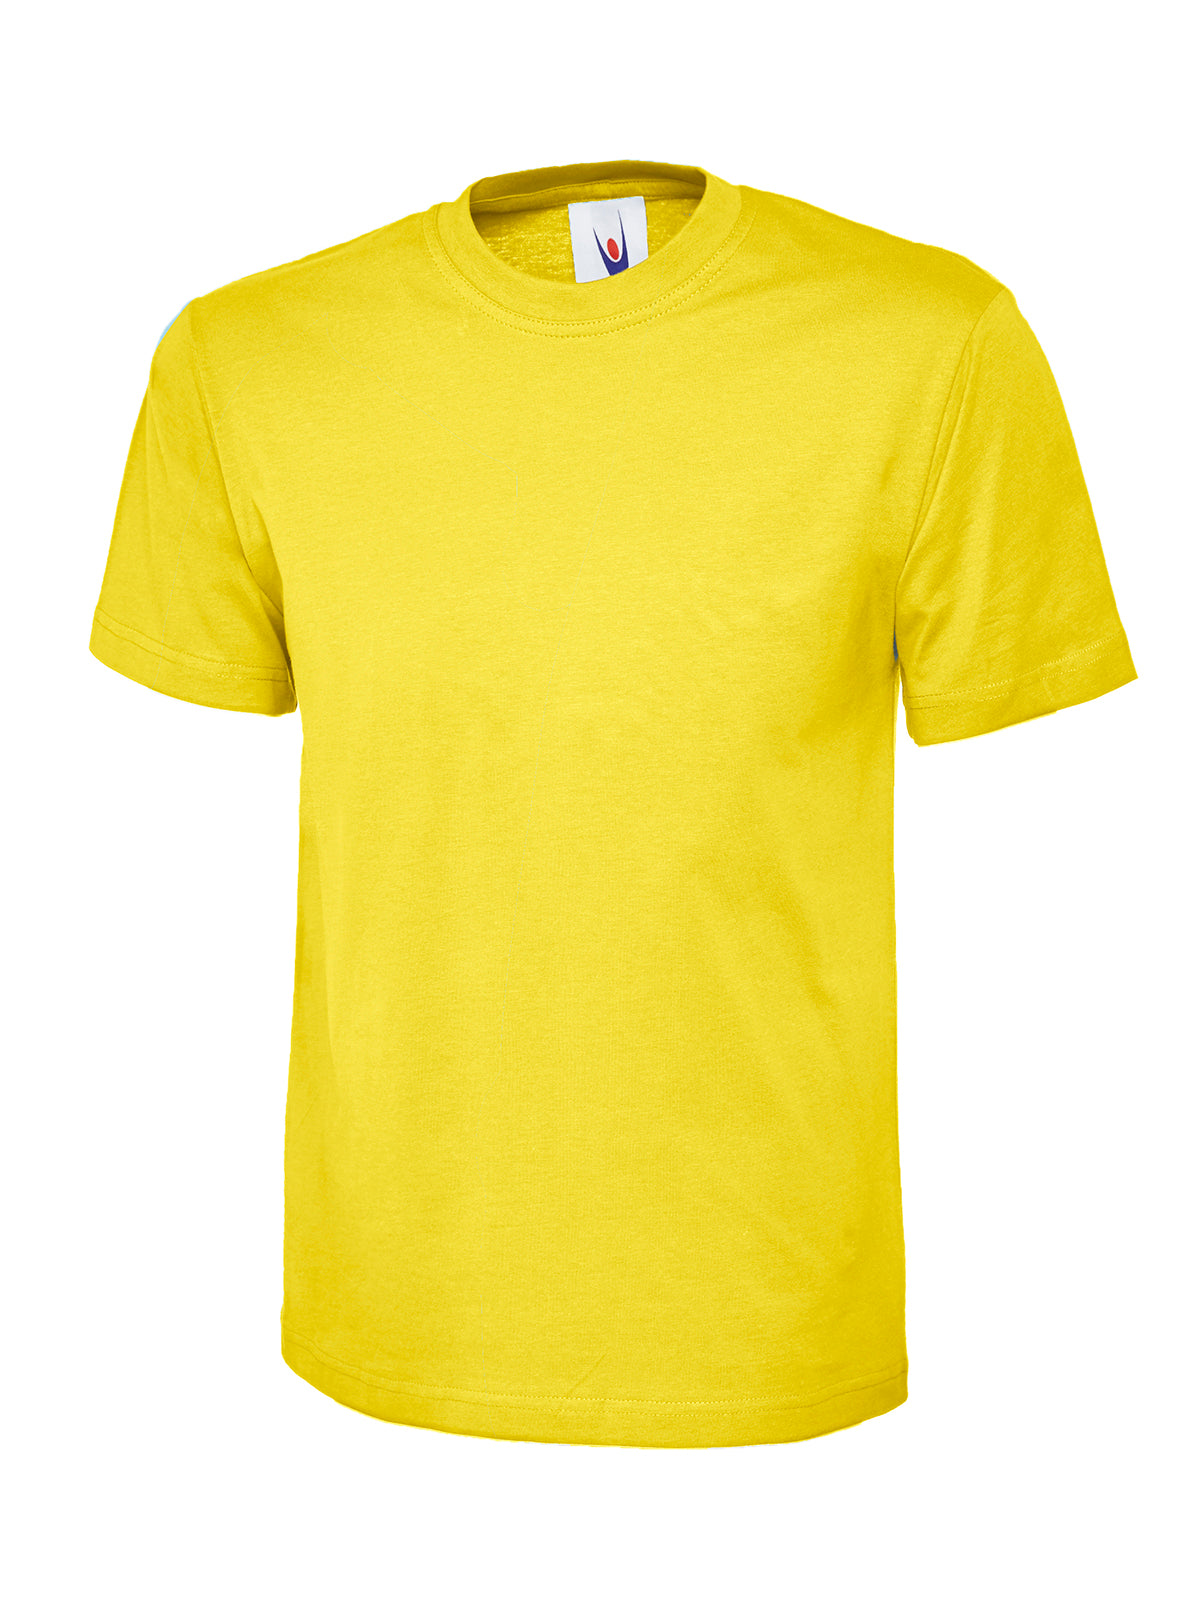 childrens_t-shirt_yellow